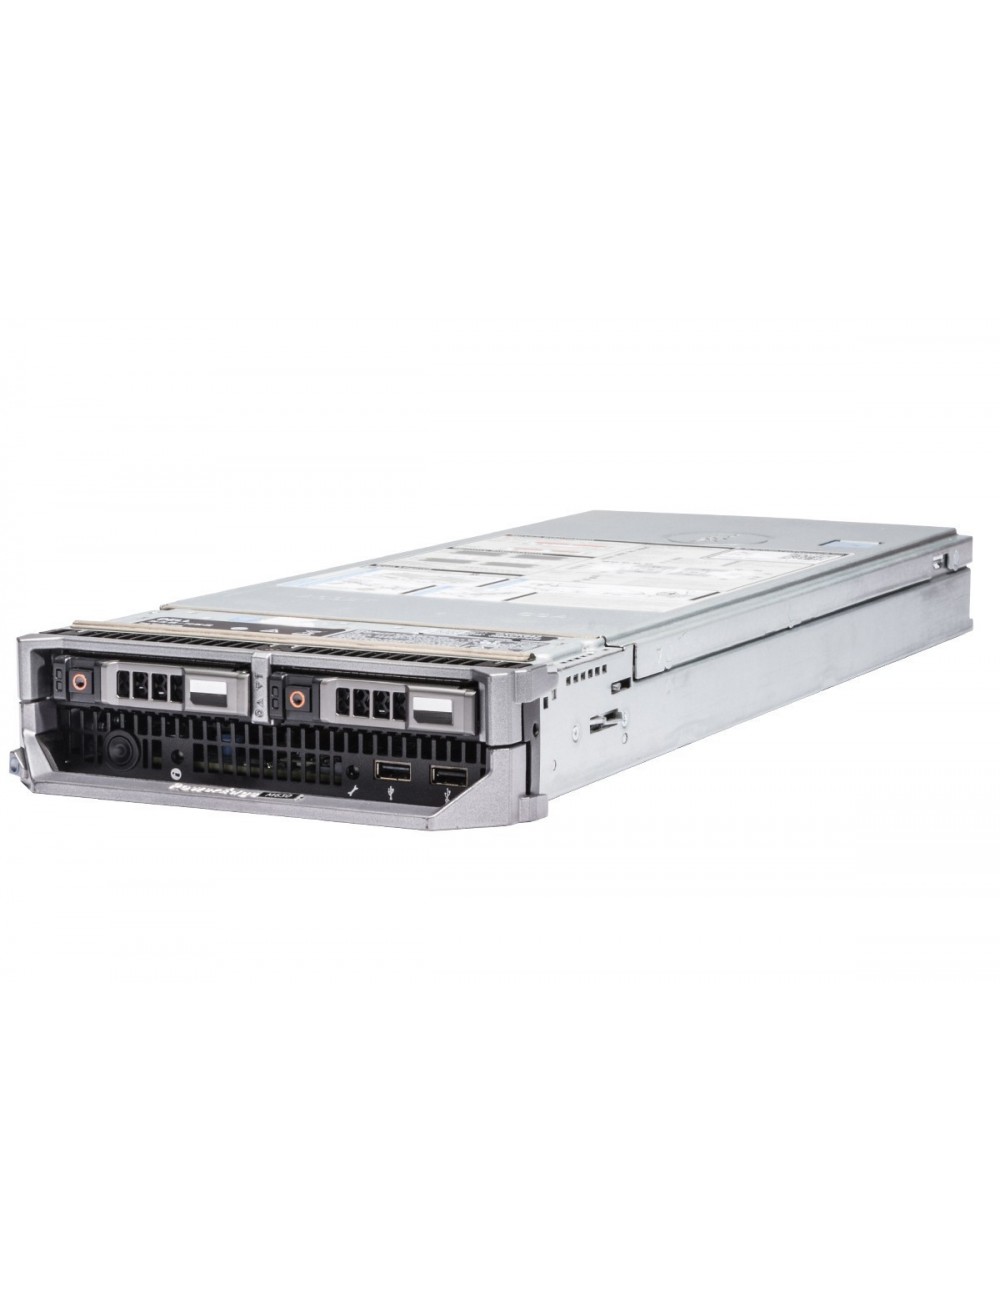 Dell PowerEdge M630 Blade Server 2x E5-2660 v4 14C, 256 GB RAM, 2x 480GB SSD